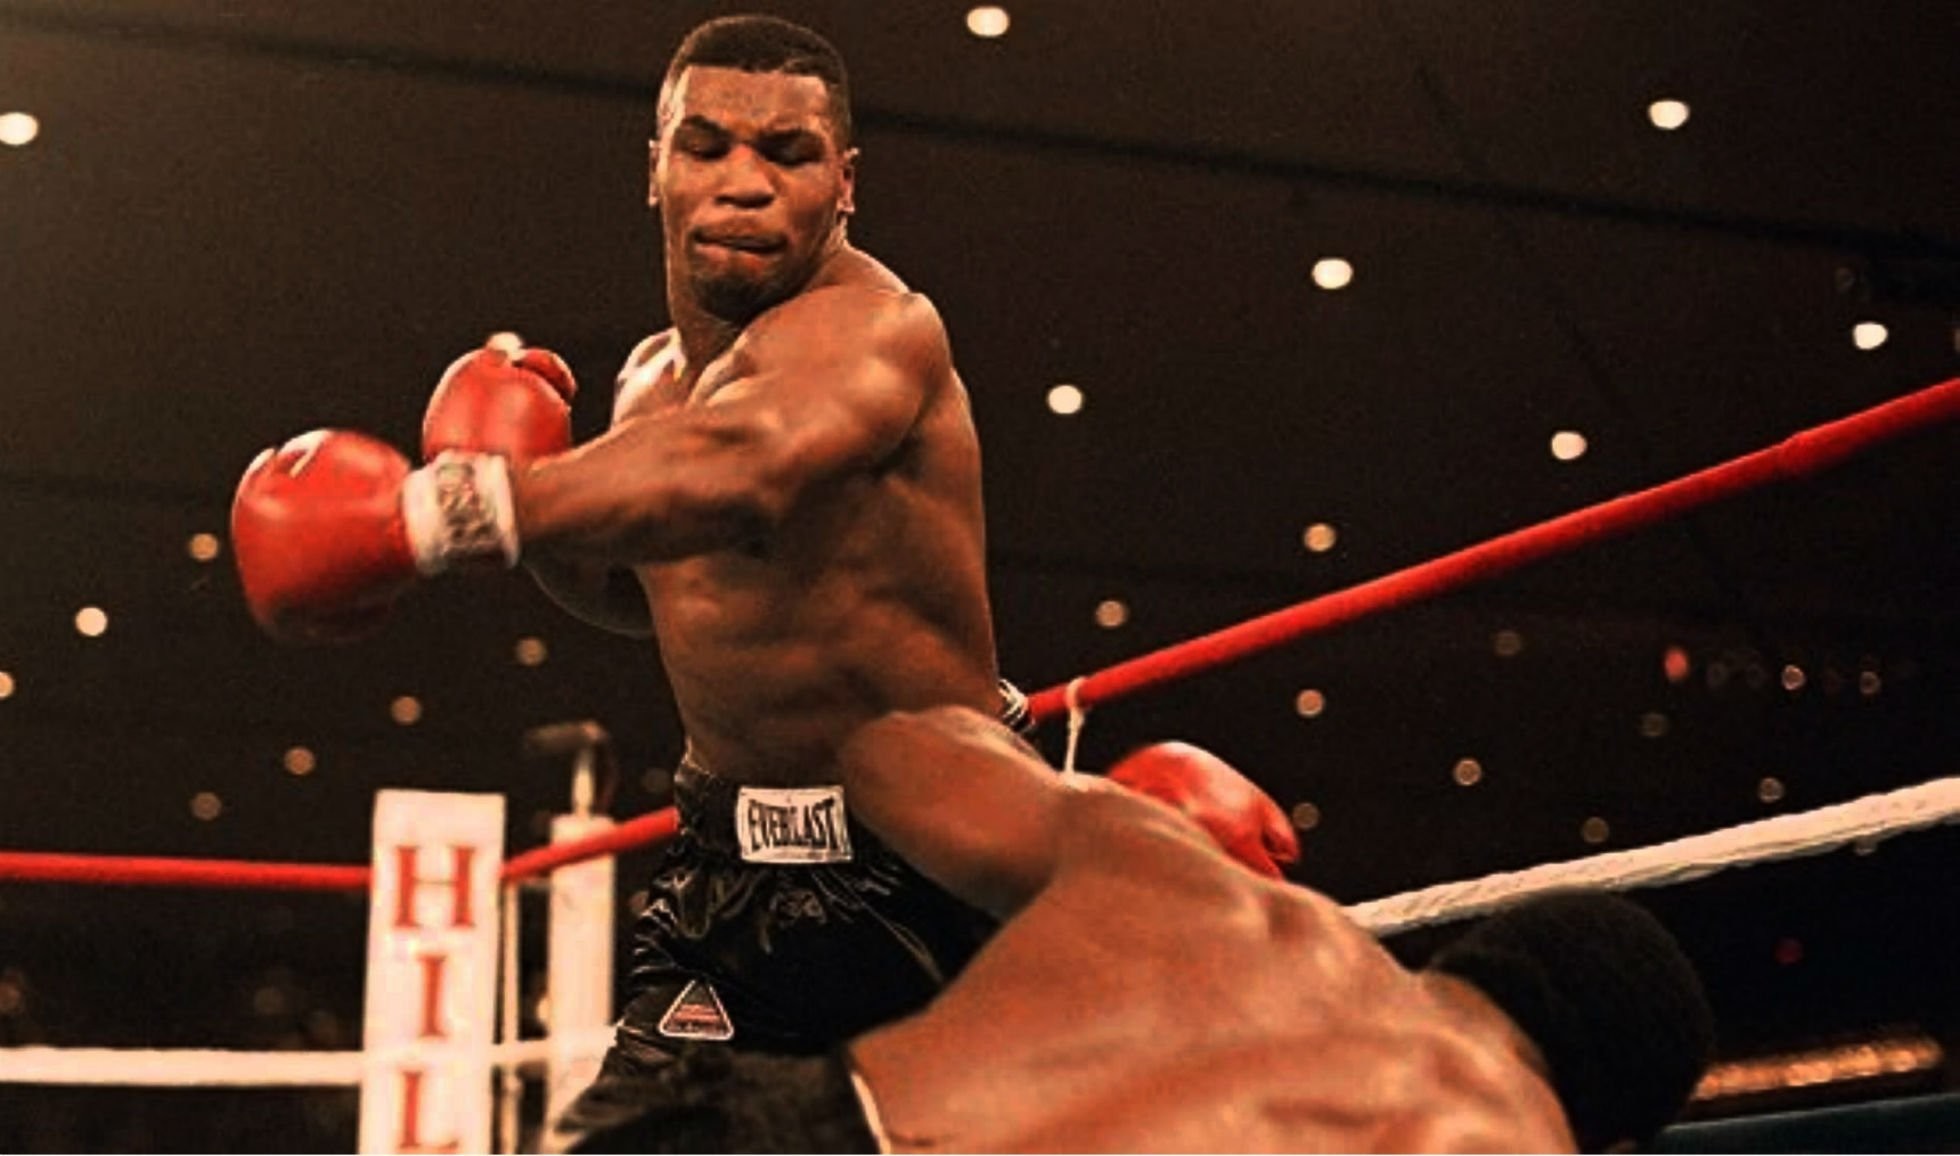 SZSHJR 1/12 Boxing Champion Mike Tyson 6